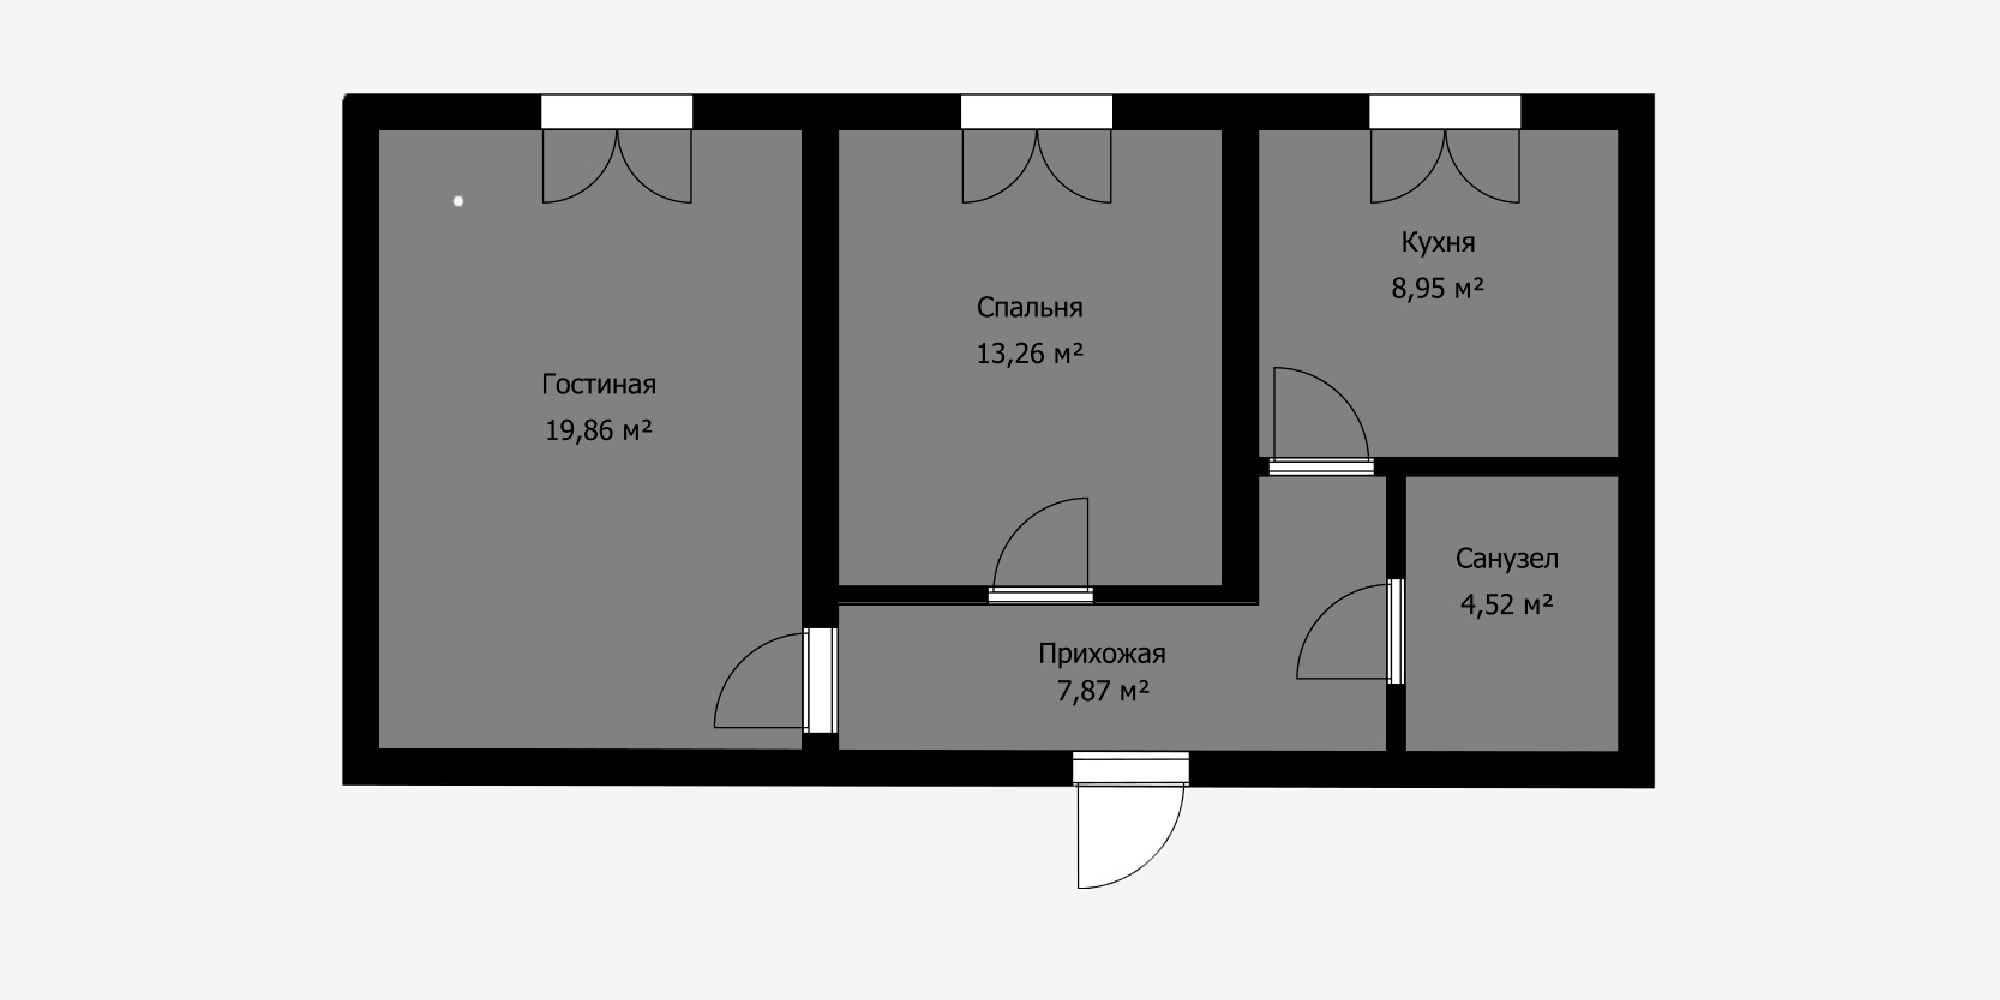 В панельных домах все поперечные стены обычно несущие и демонтировать можно только одну перегородку — между жилой комнатой и коридором